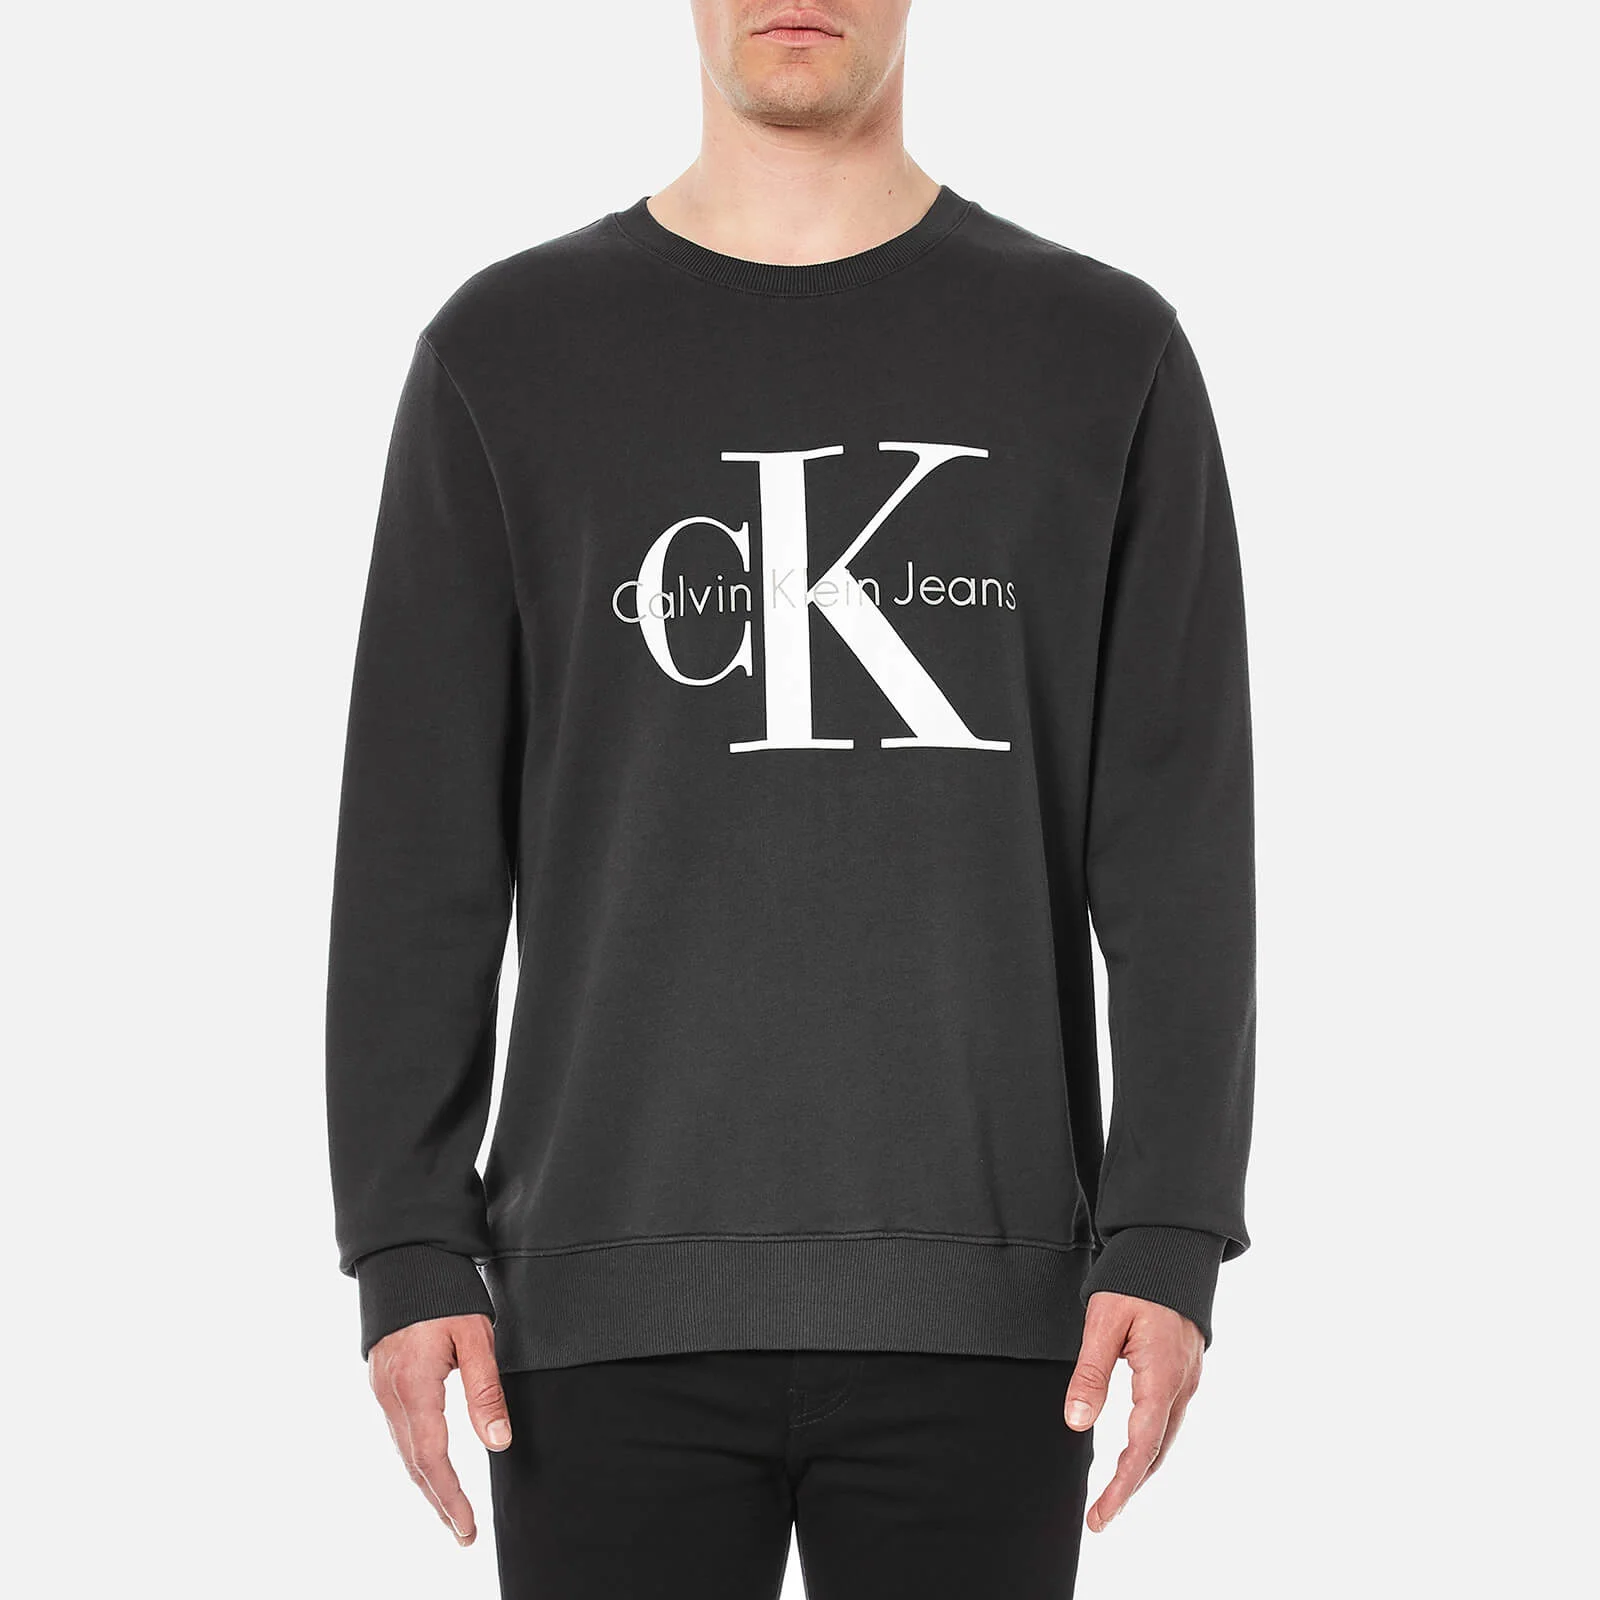 Calvin Klein Men's 90's Re-Issue Sweatshirt - Black Image 1